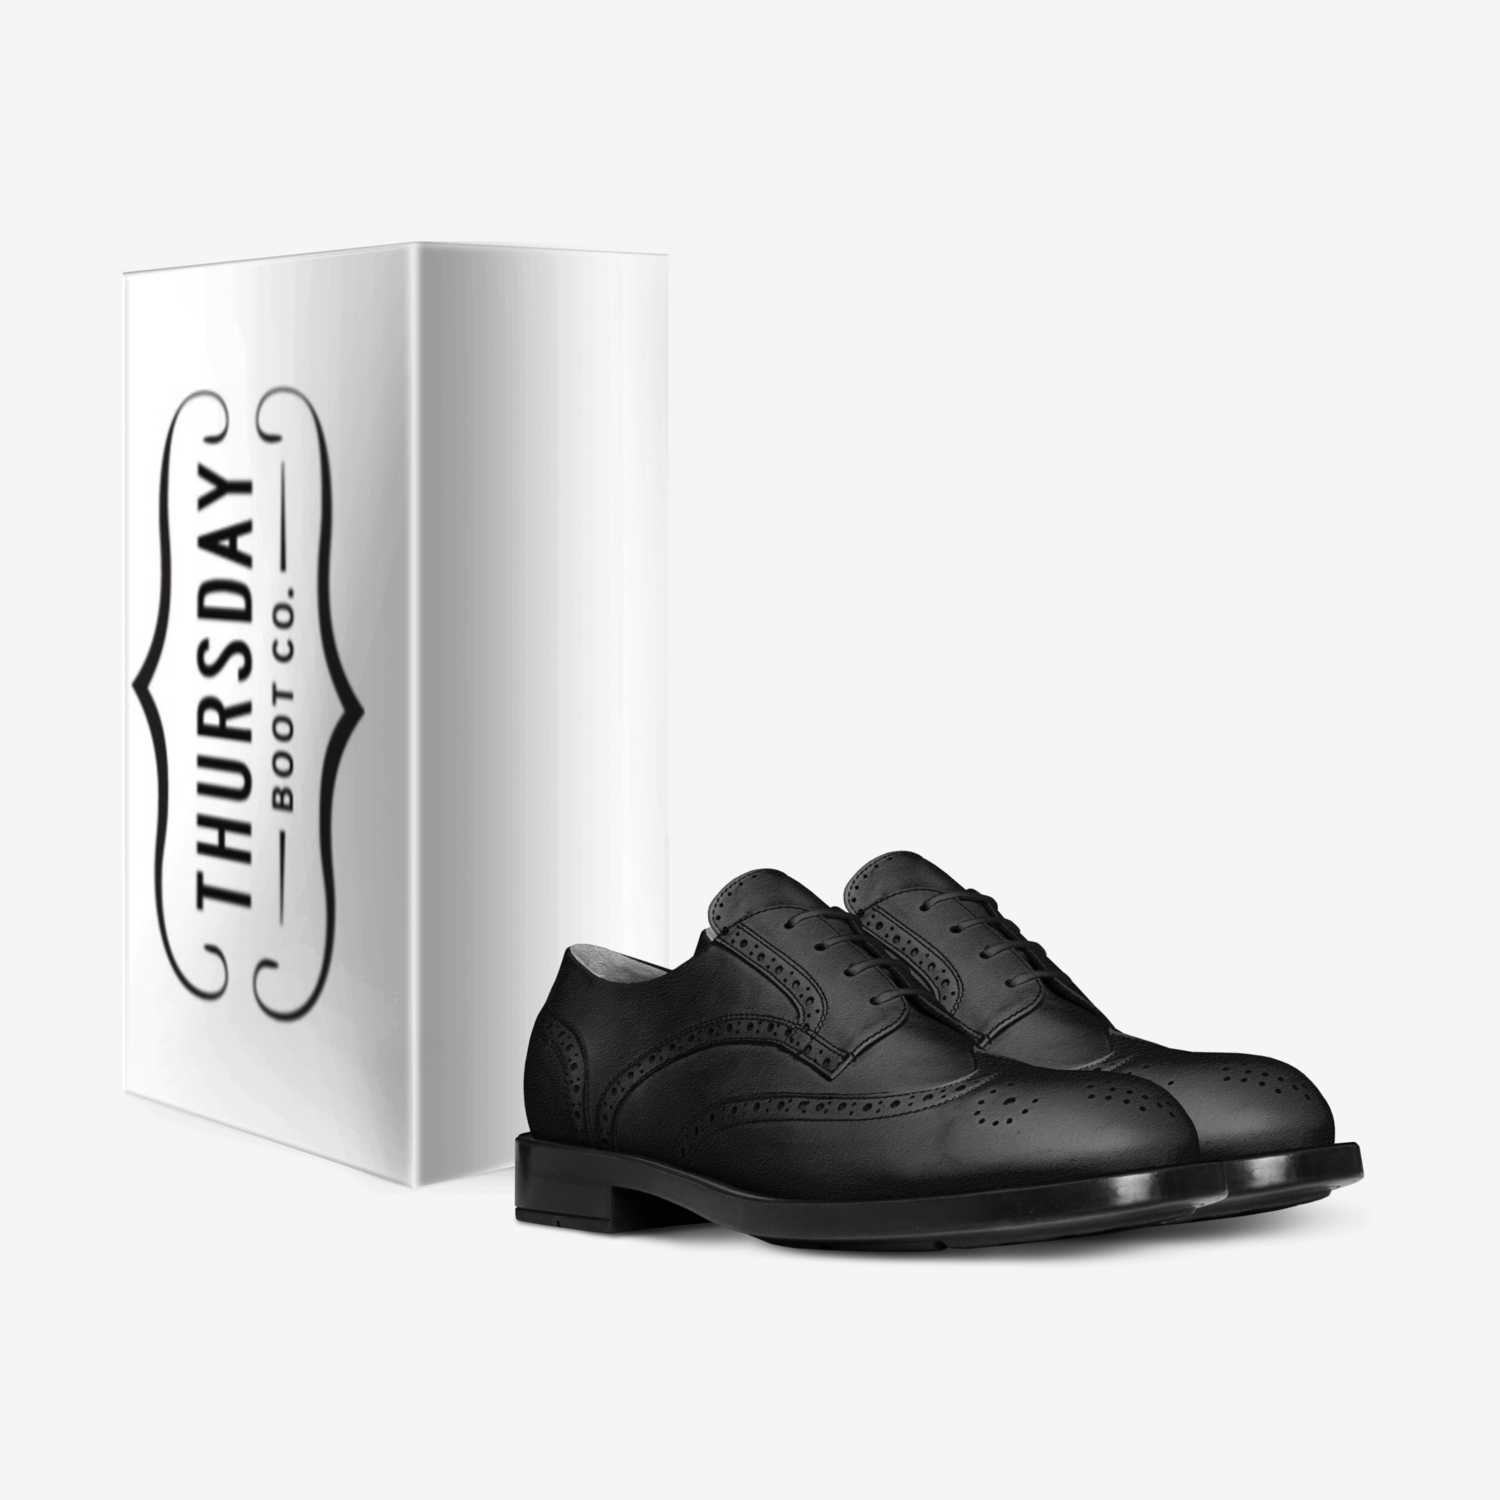 Ooooooooo custom made in Italy shoes by Kvn Elvn | Box view